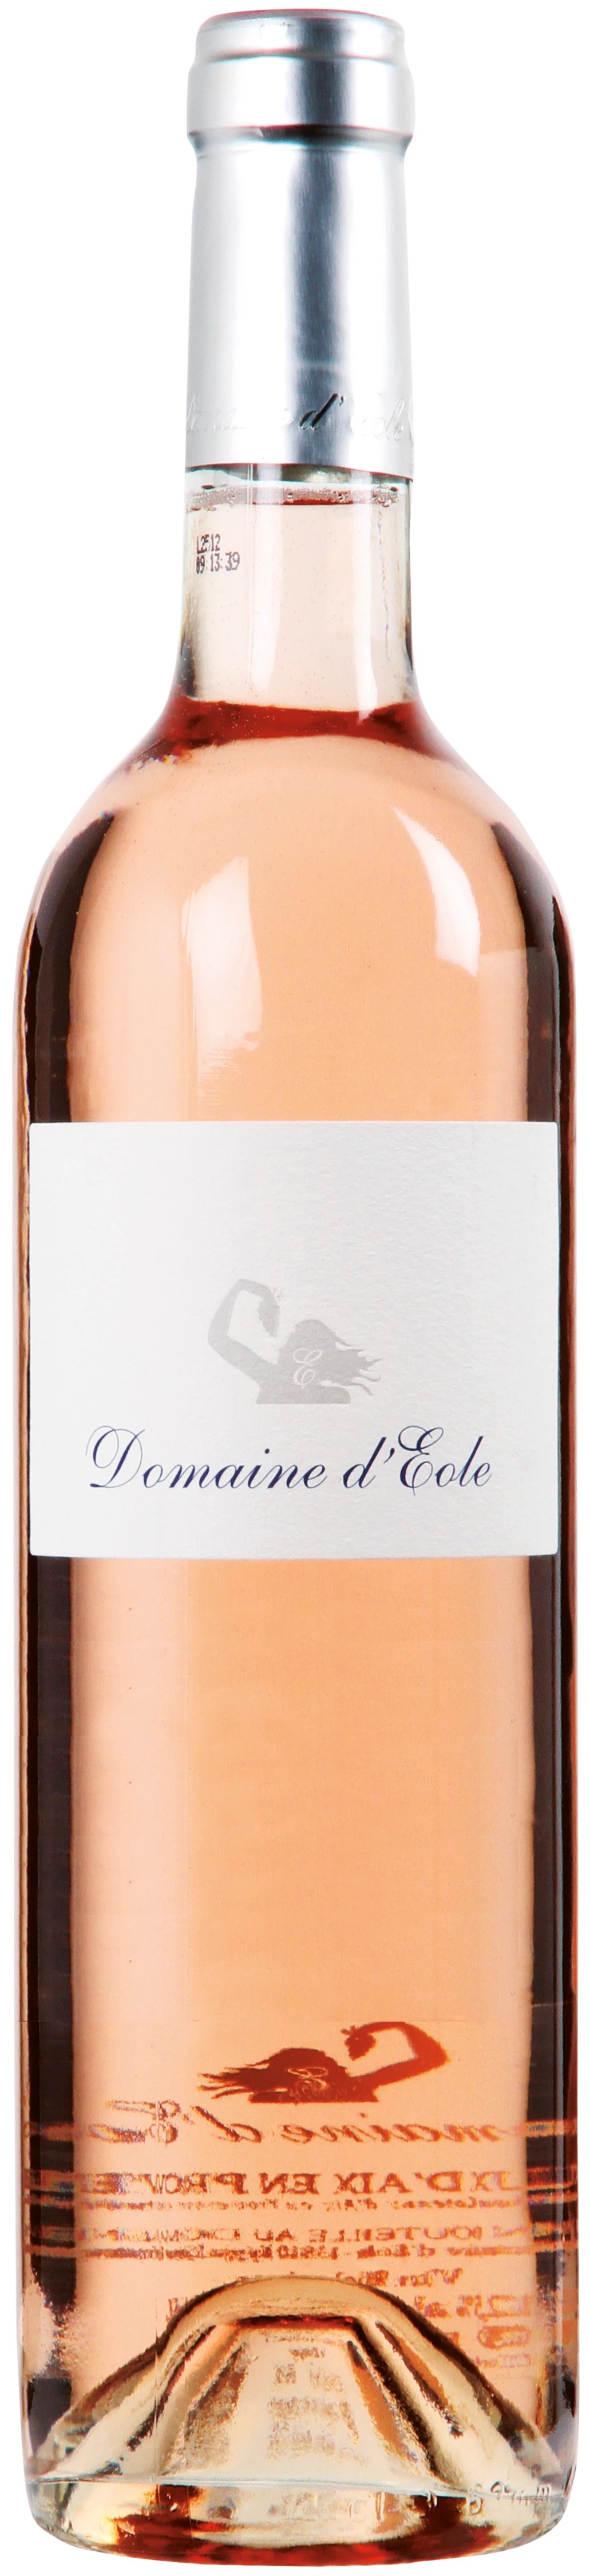 Løgismose Rosé Domaine d'Eole Coteaux d'Aix en Provence Rosé ØKO 2019 - 210573